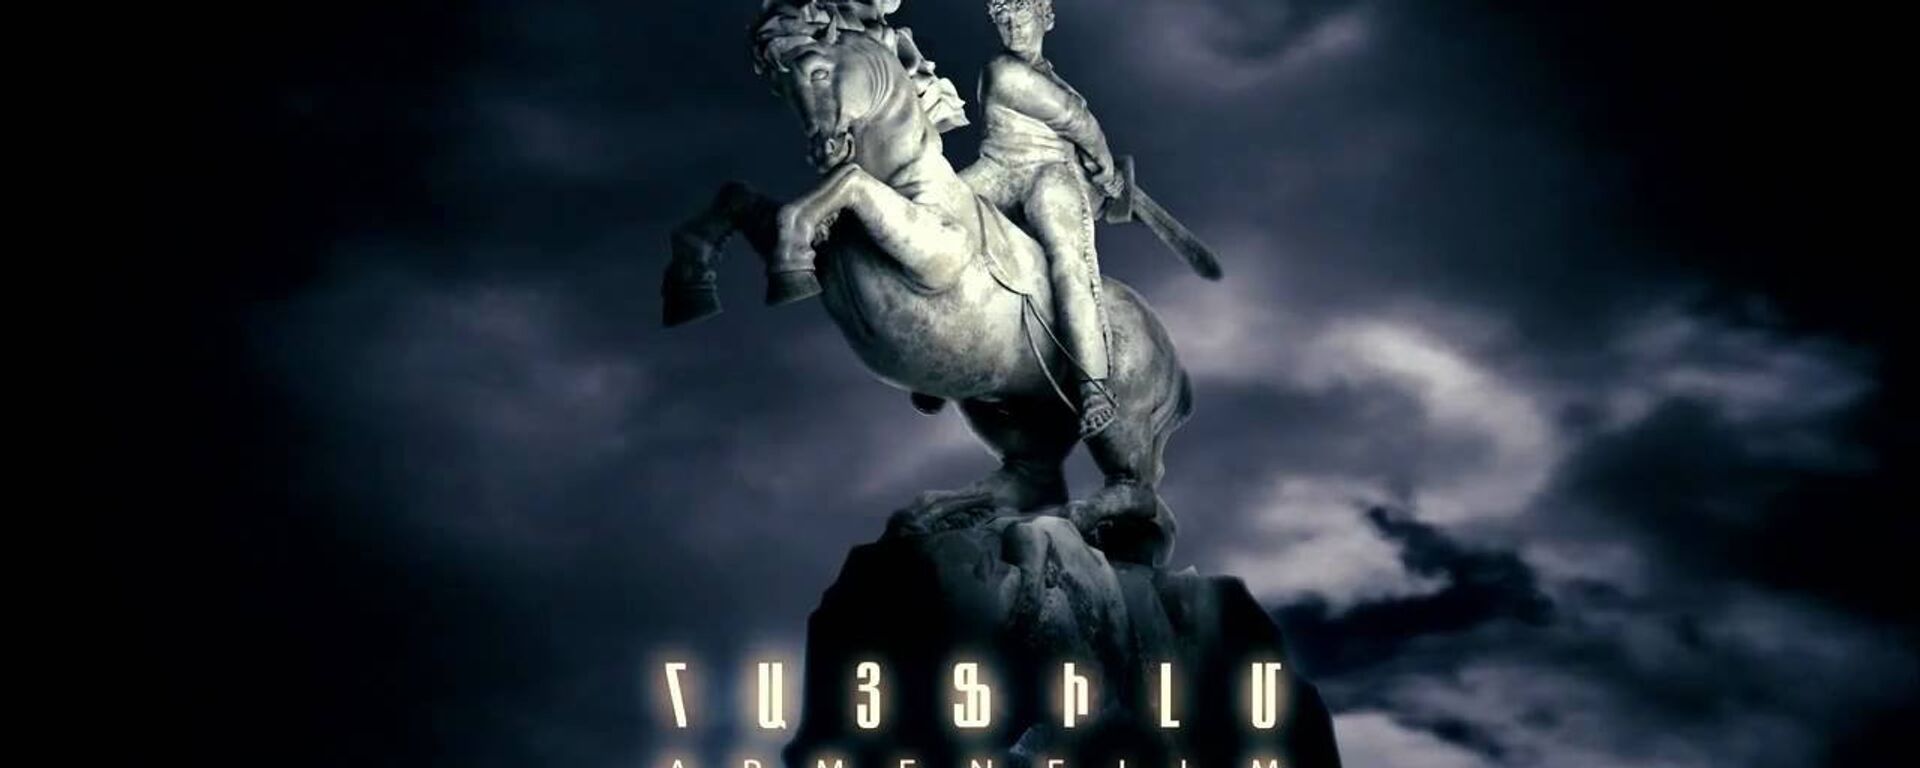 Киностудия Арменфильм - Sputnik Армения, 1920, 26.09.2020